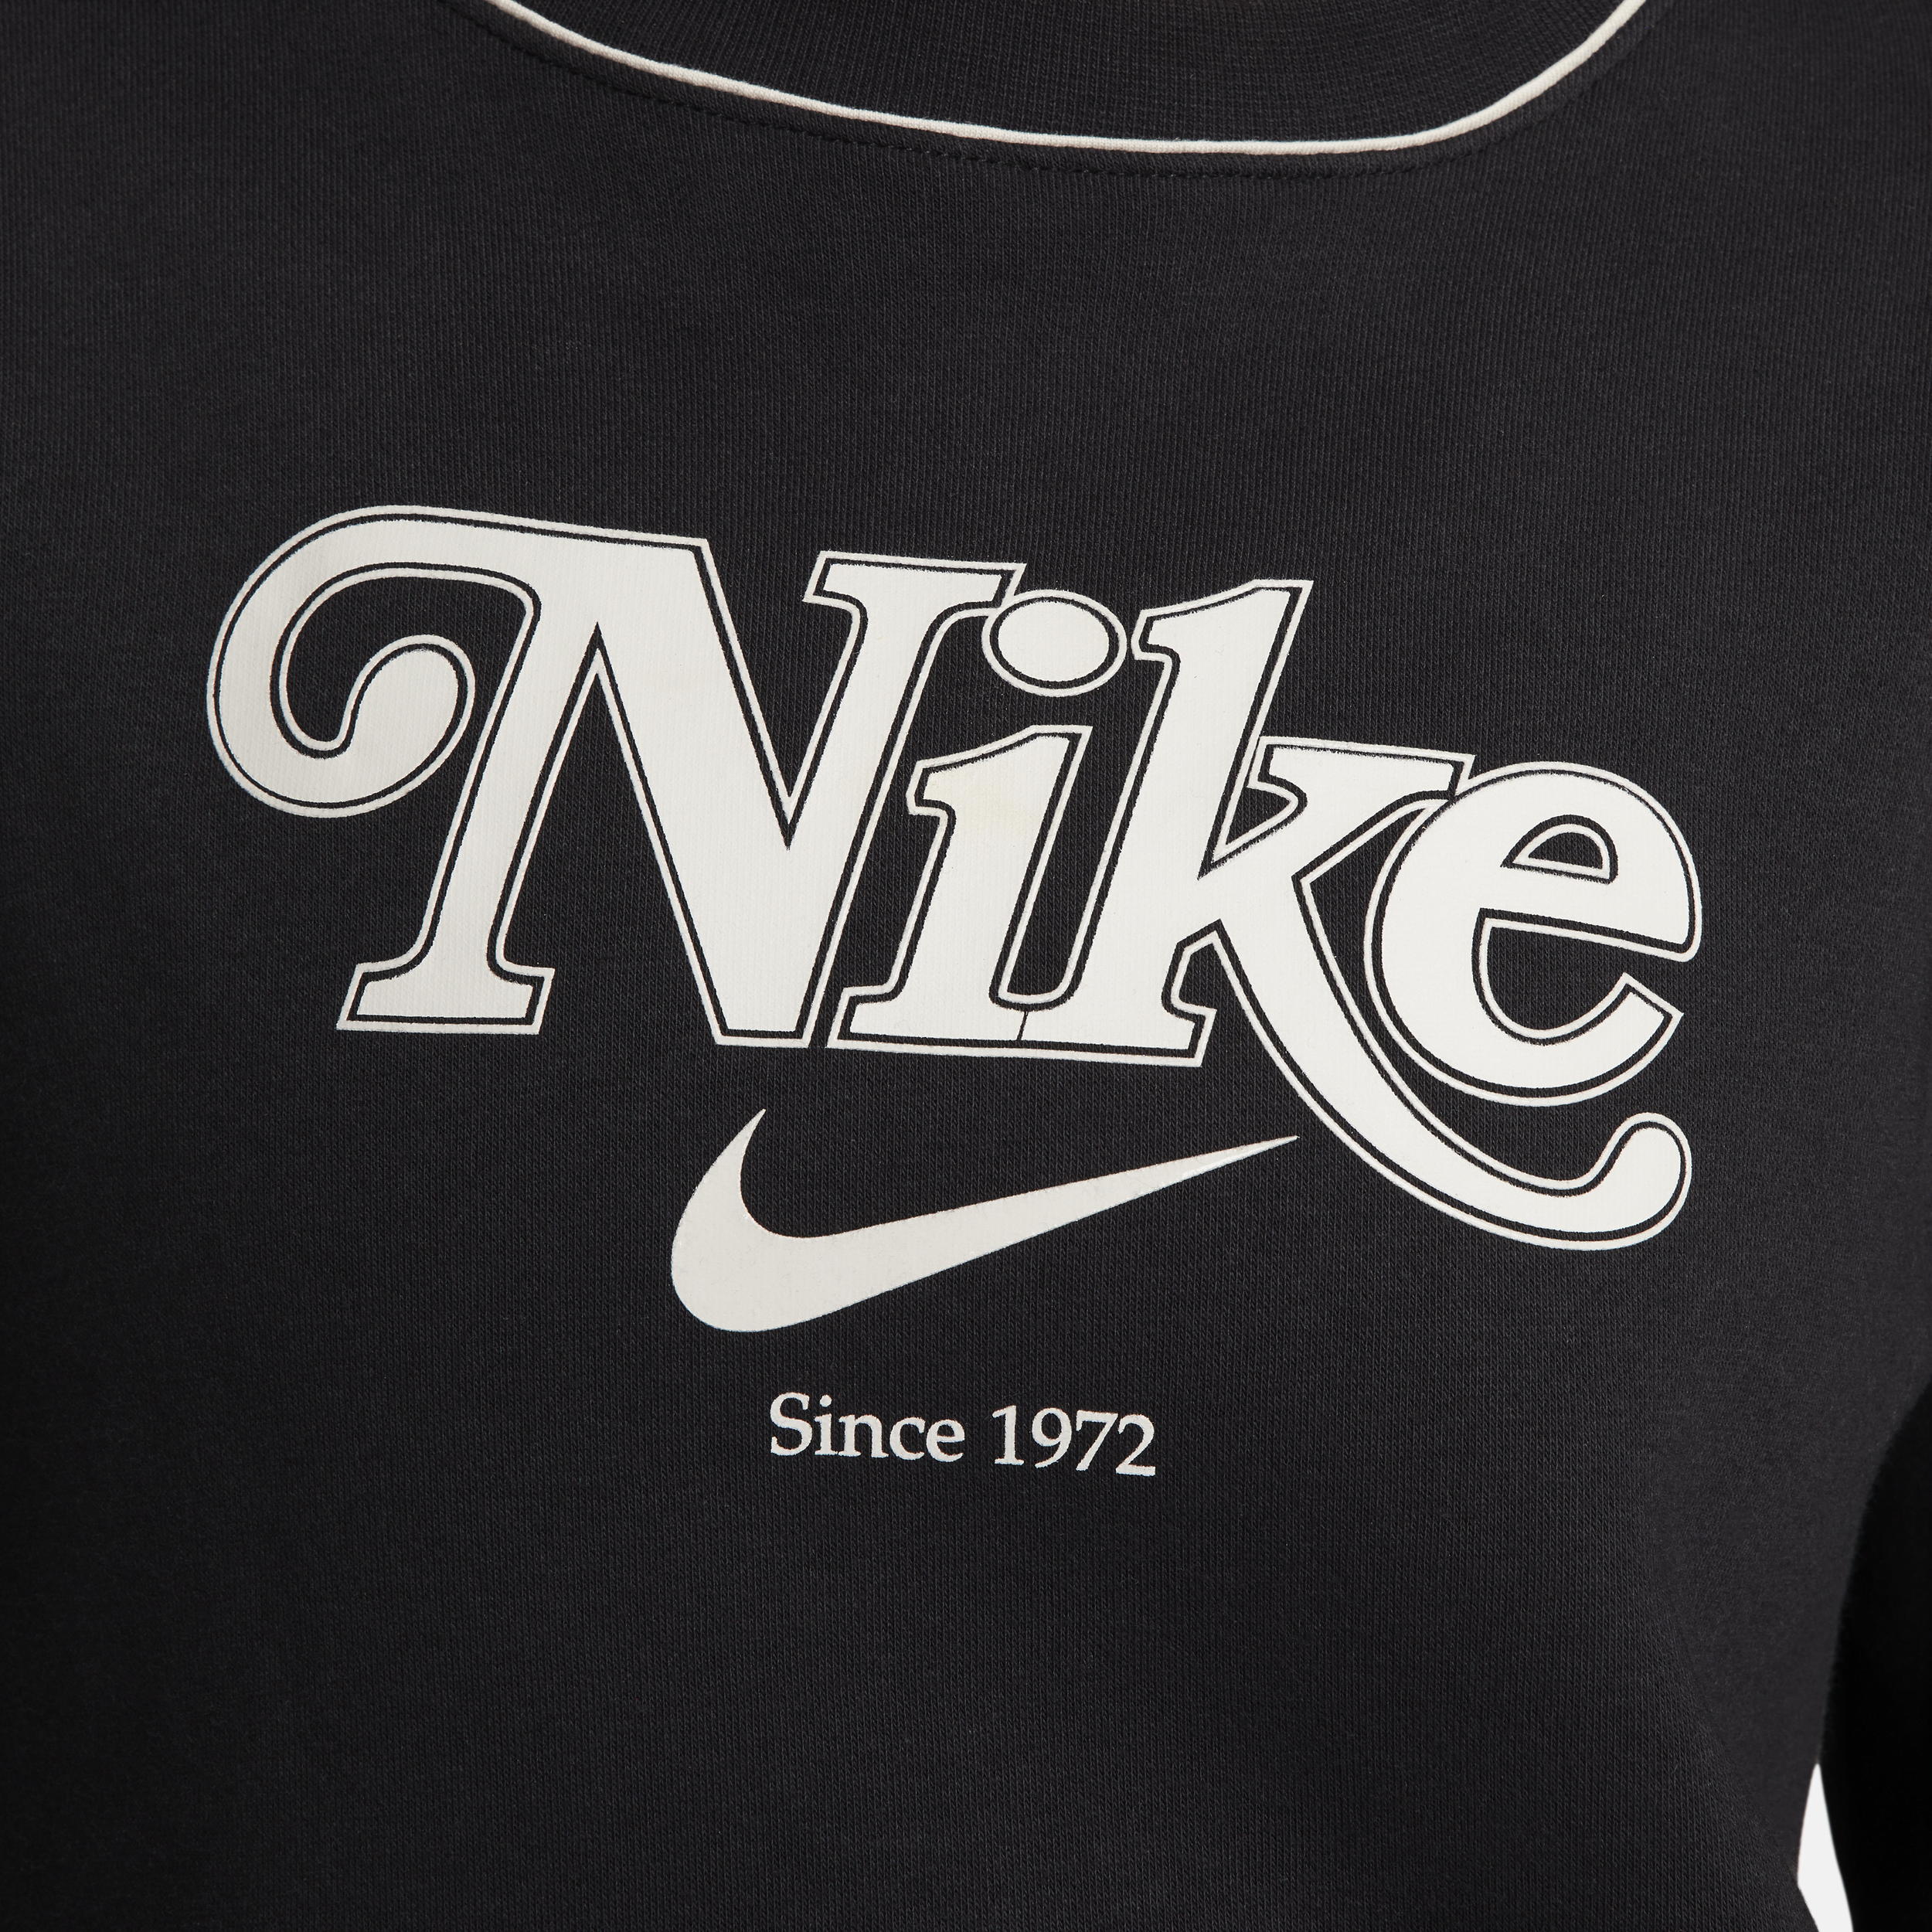 Nike Sportswear sweatshirt van fleece met ronde hals voor dames Zwart